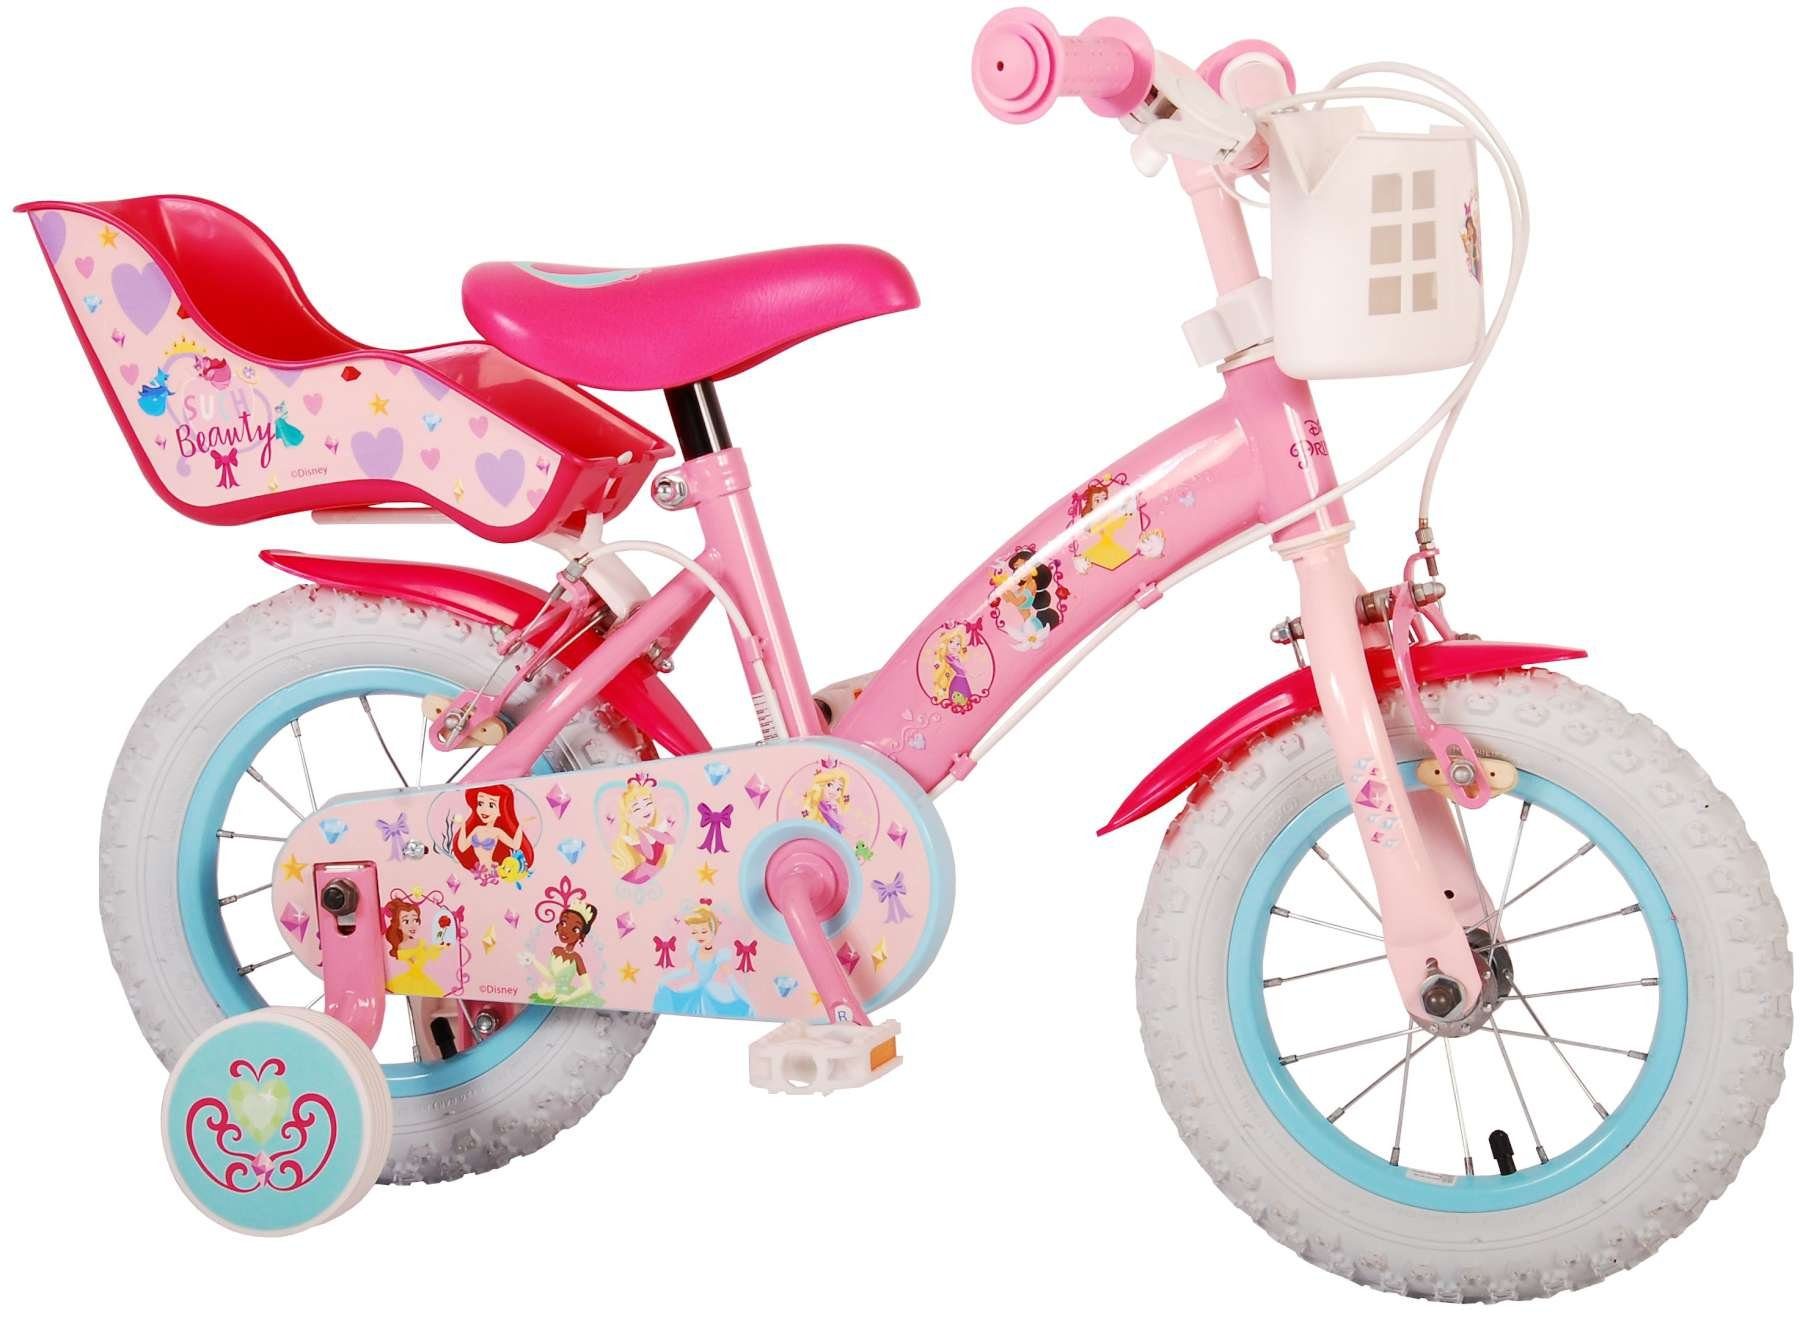 TPFSports Kinderfahrrad Disney Princess 12 Zoll mit 2 Handbremsen, 1 Gang, (Mädchen Fahrrad - Rutschfeste Sicherheitsgriffe), Kinder Fahrrad 12 Zoll mit Stützräder Laufrad Mädchen Kinderrad